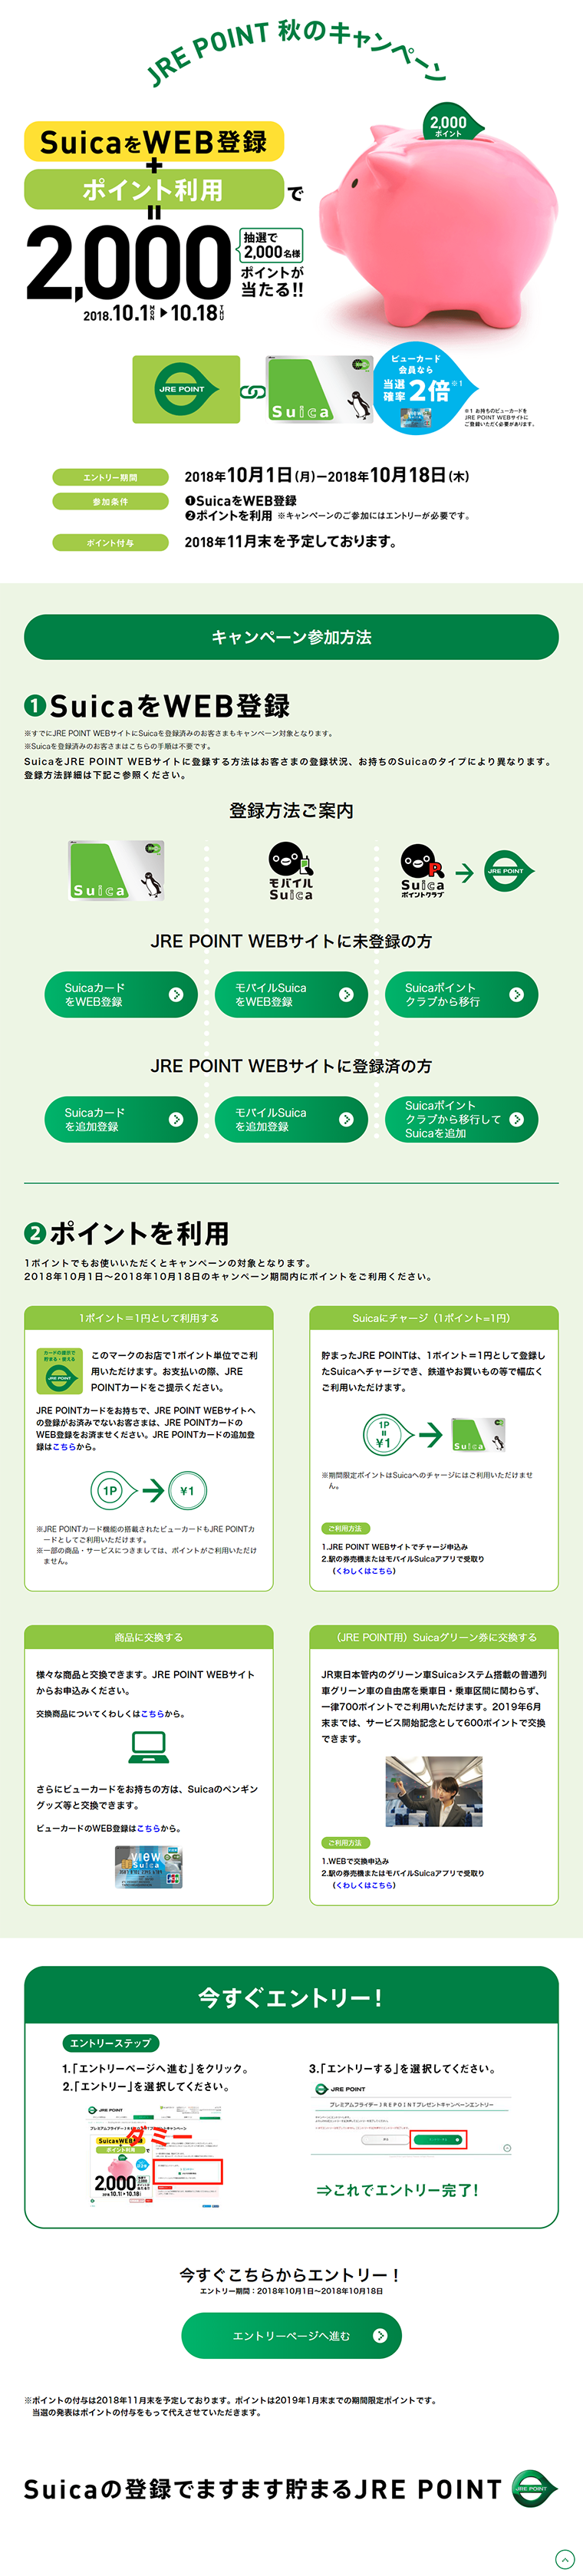 JRE POINT 秋のキャンペーン_pc_1